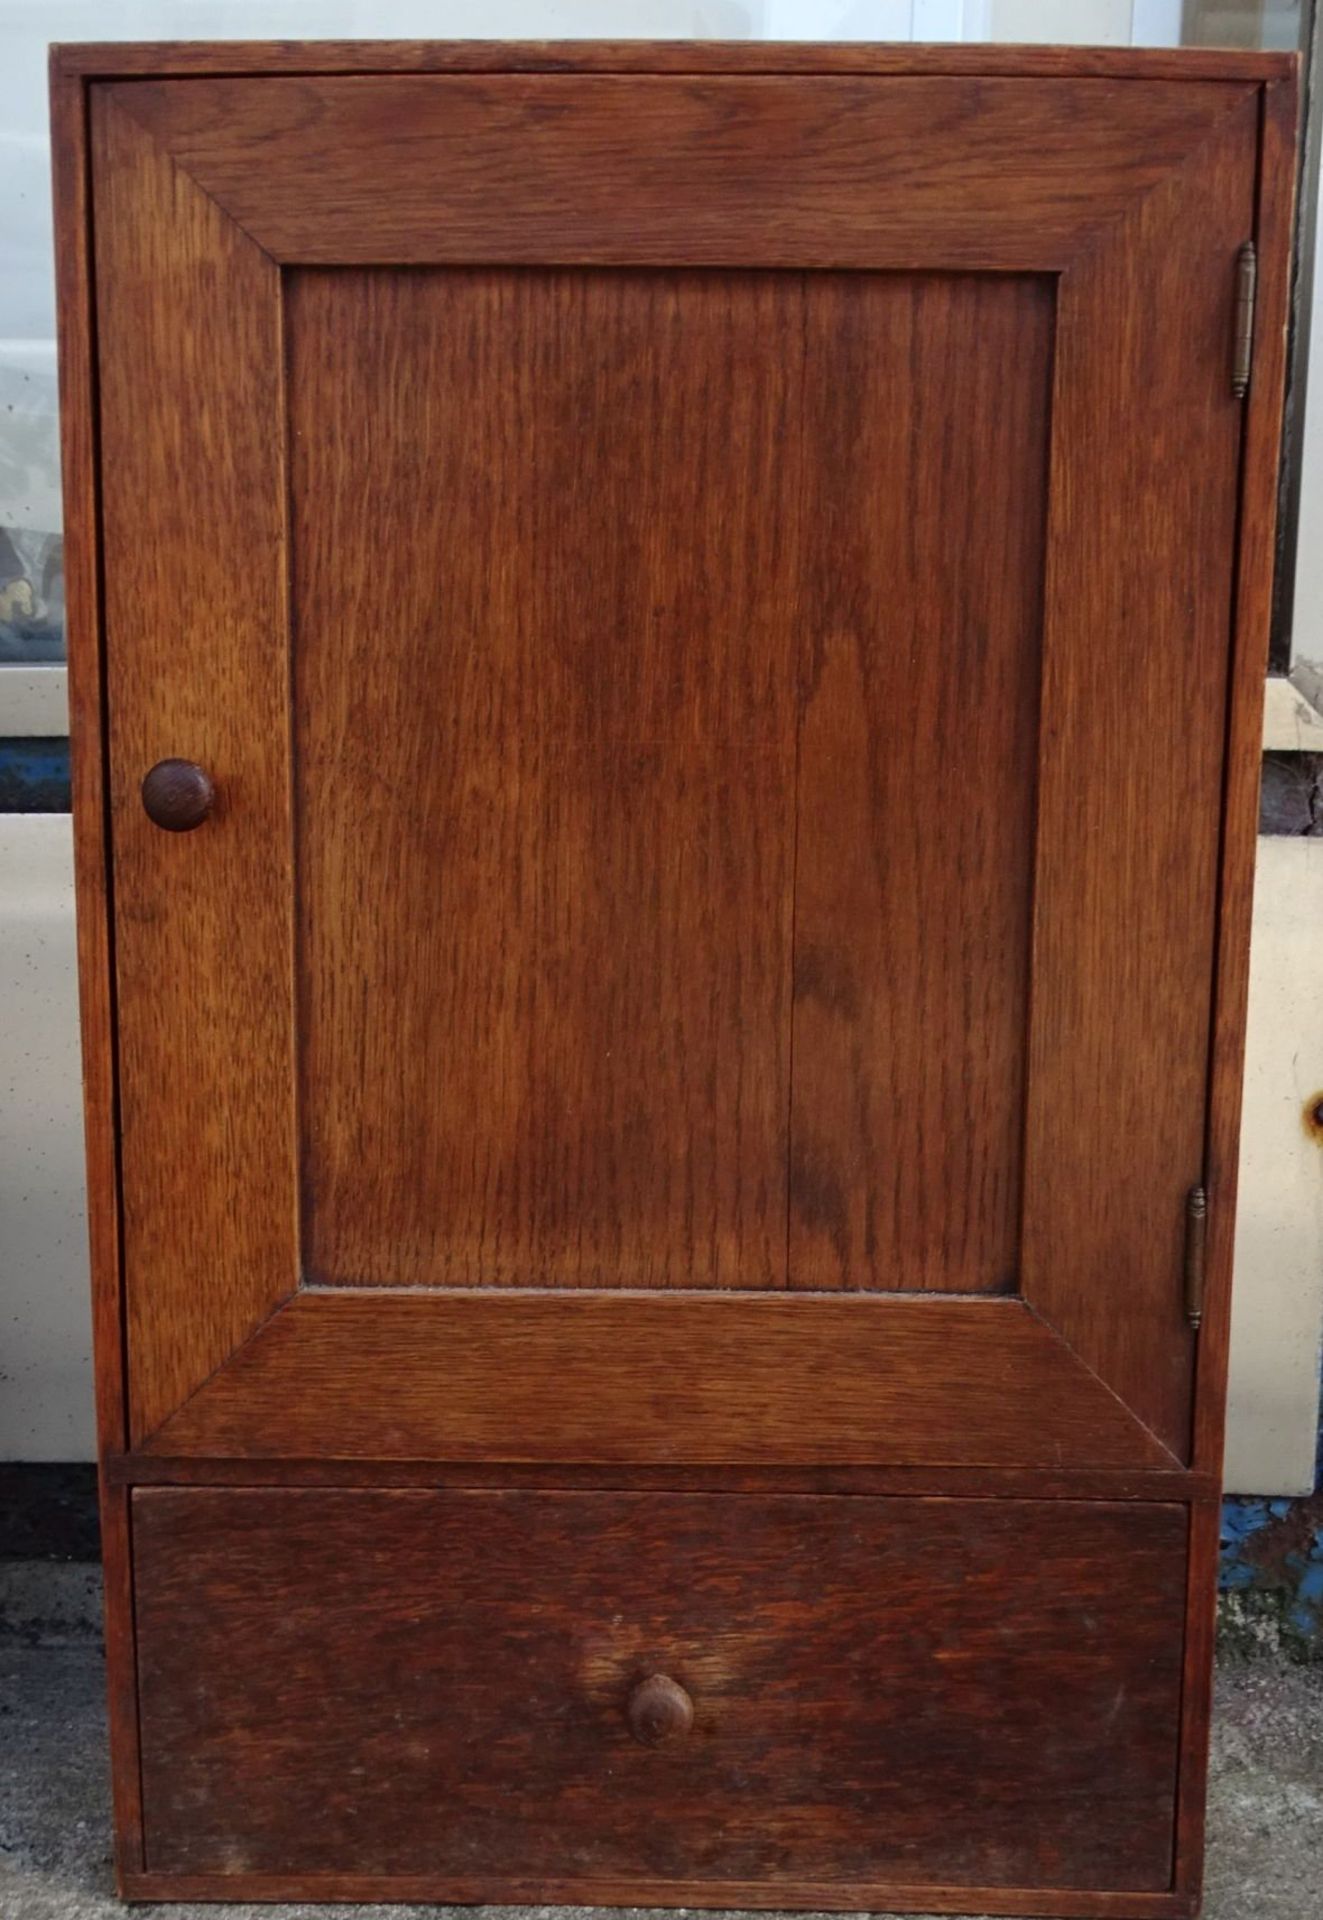 kl. Holz-Apotheken-Wandschrank, eine Schublade, 50x30x11 cm